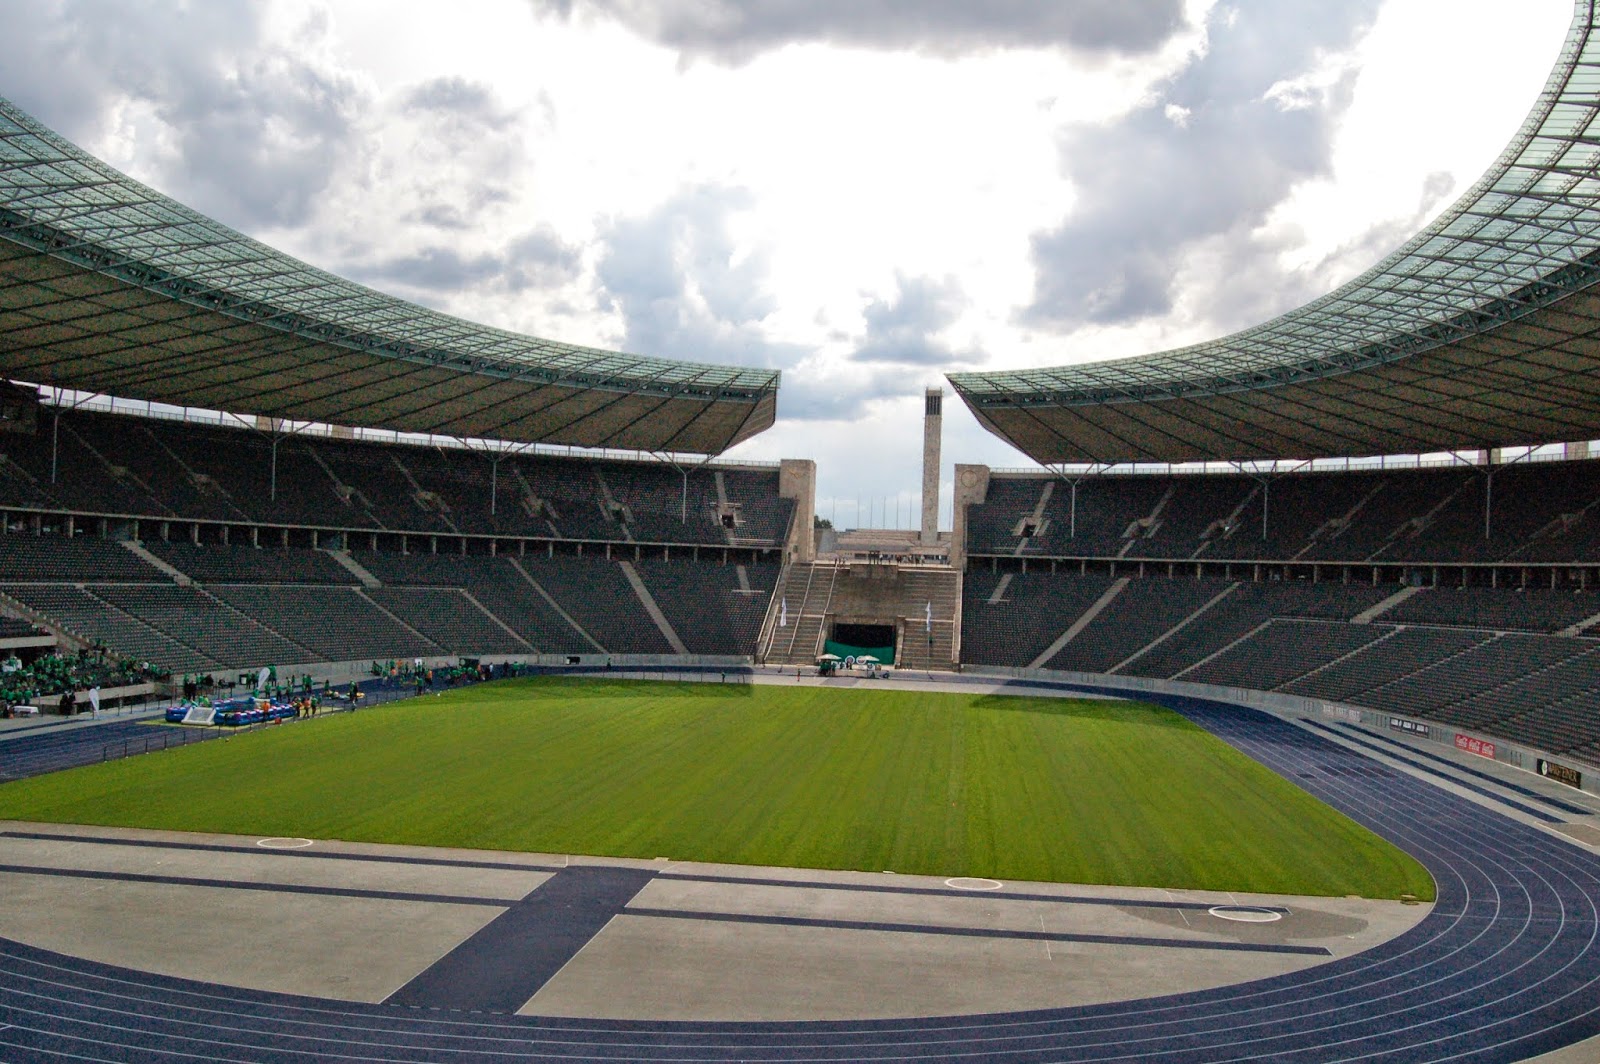 Stadion olimpijski w Berlinie, widok z trybun